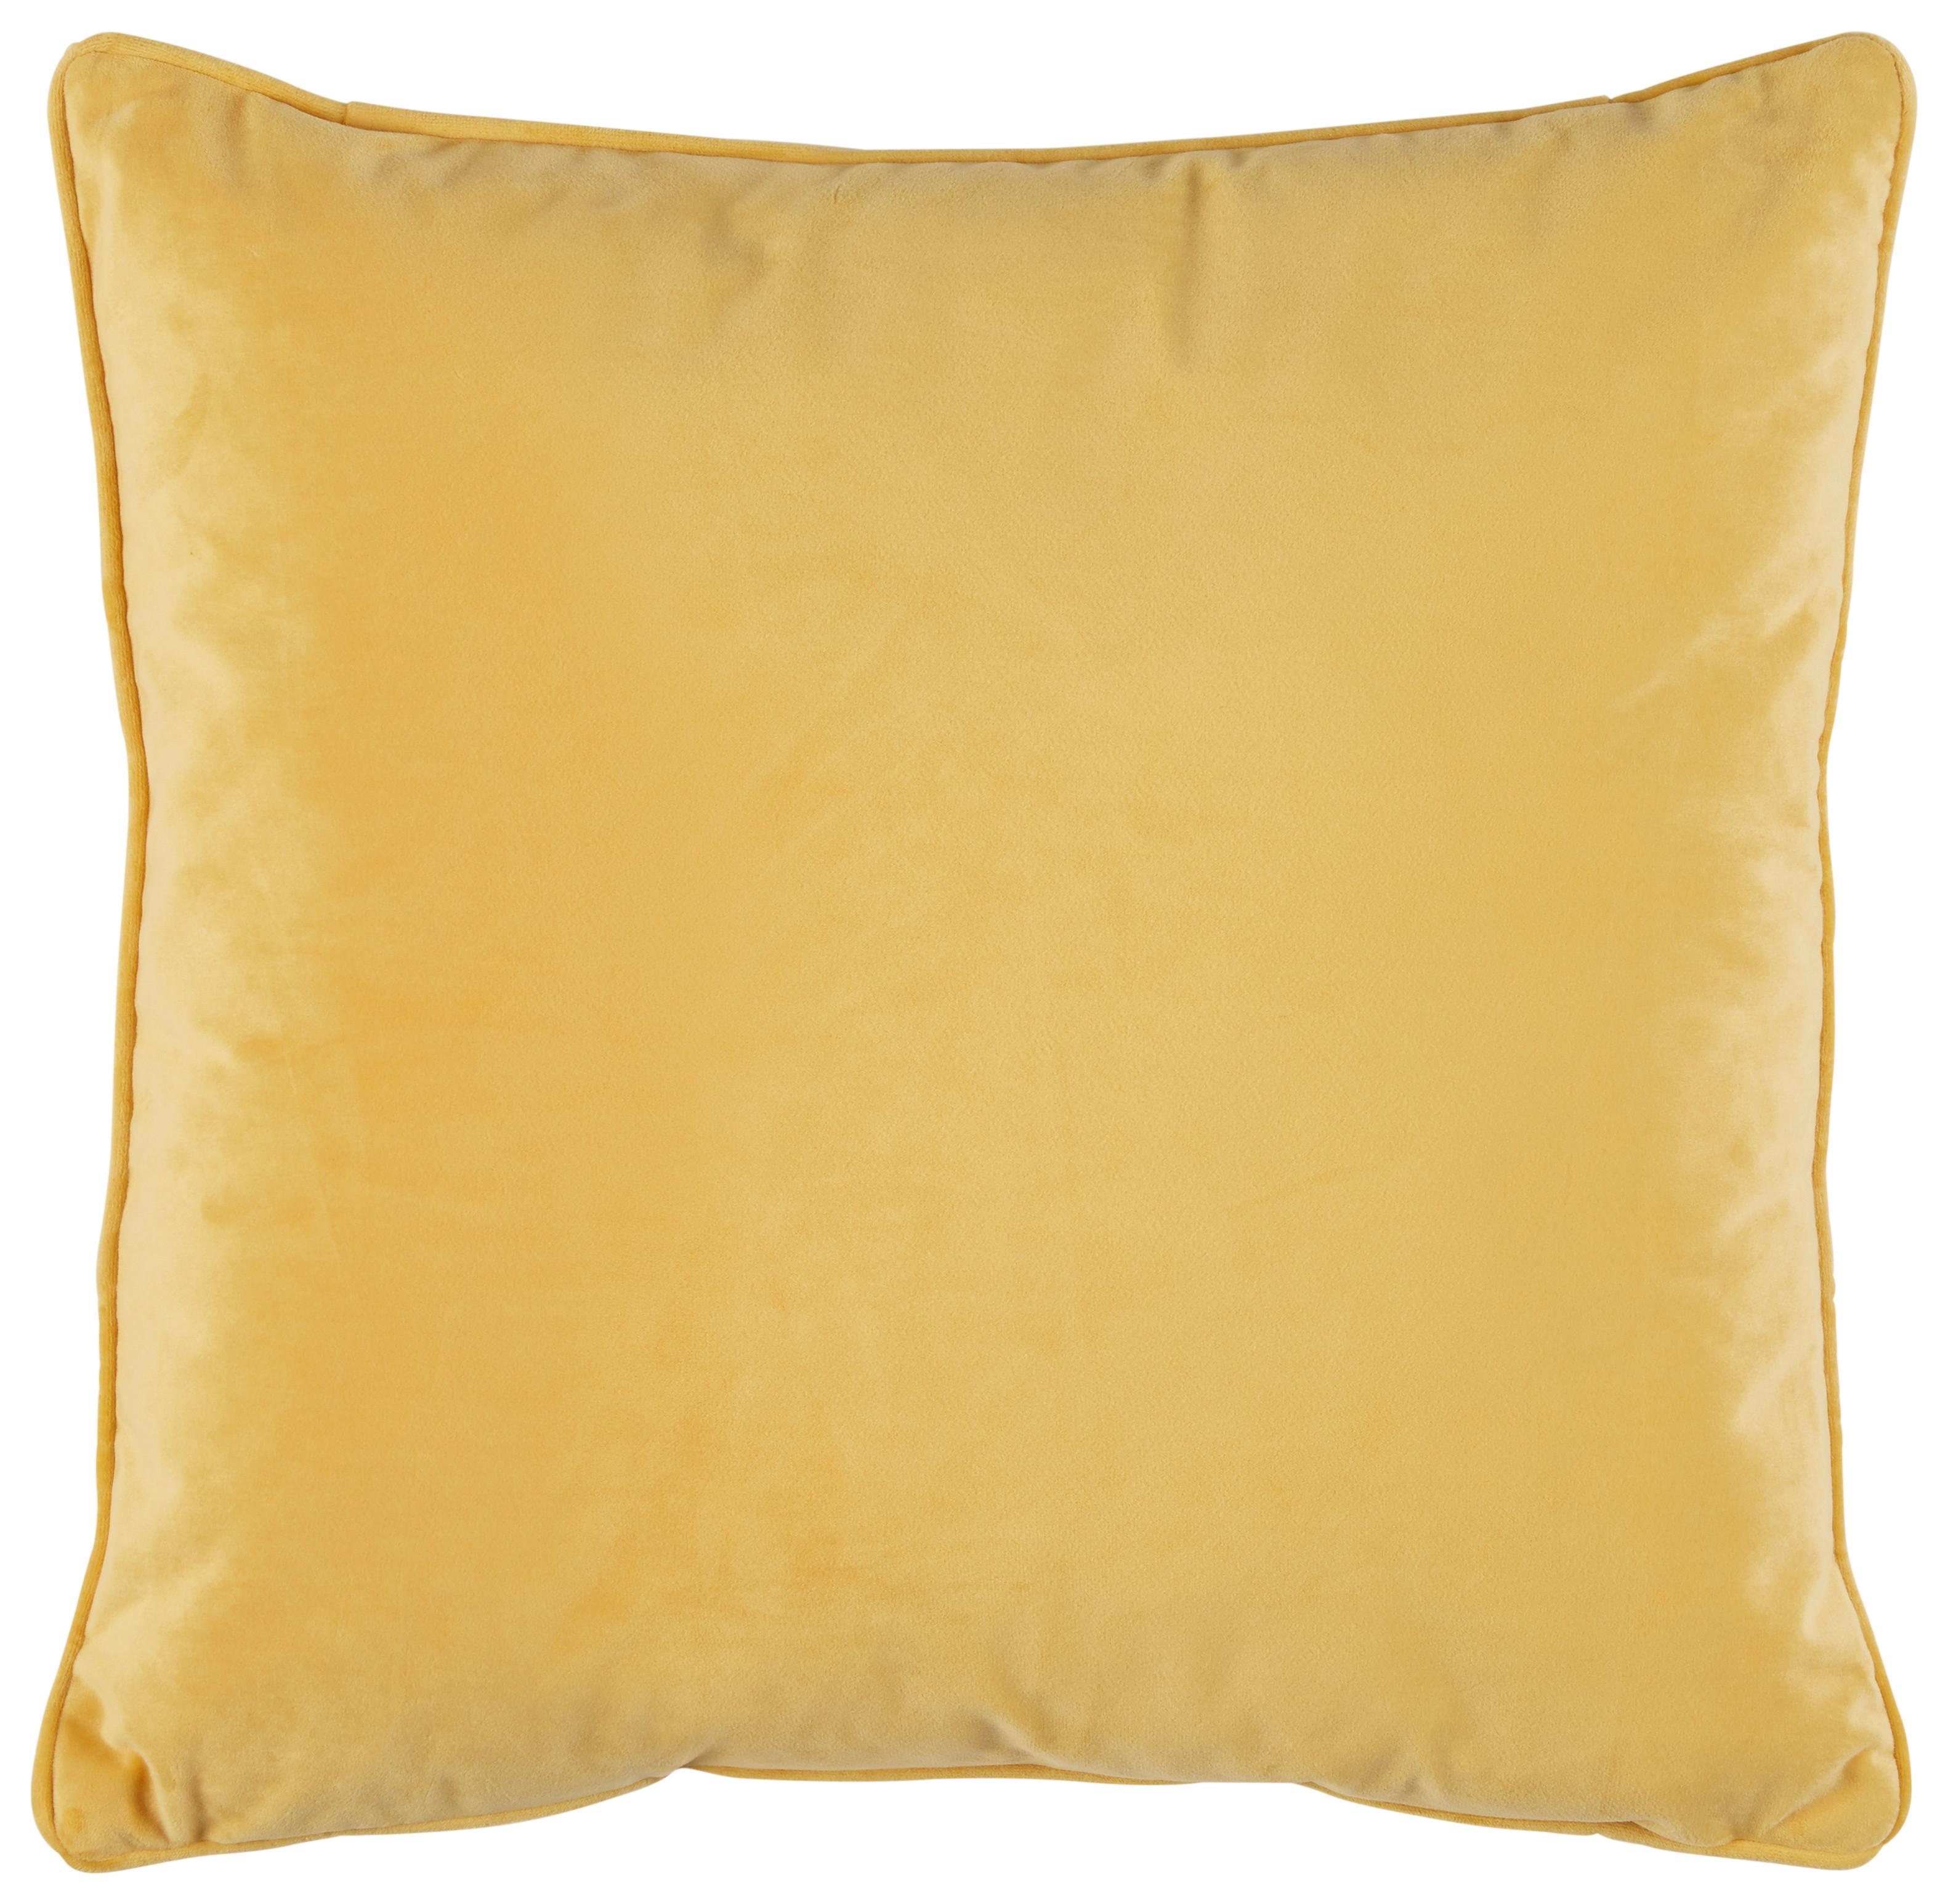 Zierkissen Viola in Gelb ca. 45x45cm - Gelb, Konventionell, Textil (45/45cm) - Premium Living